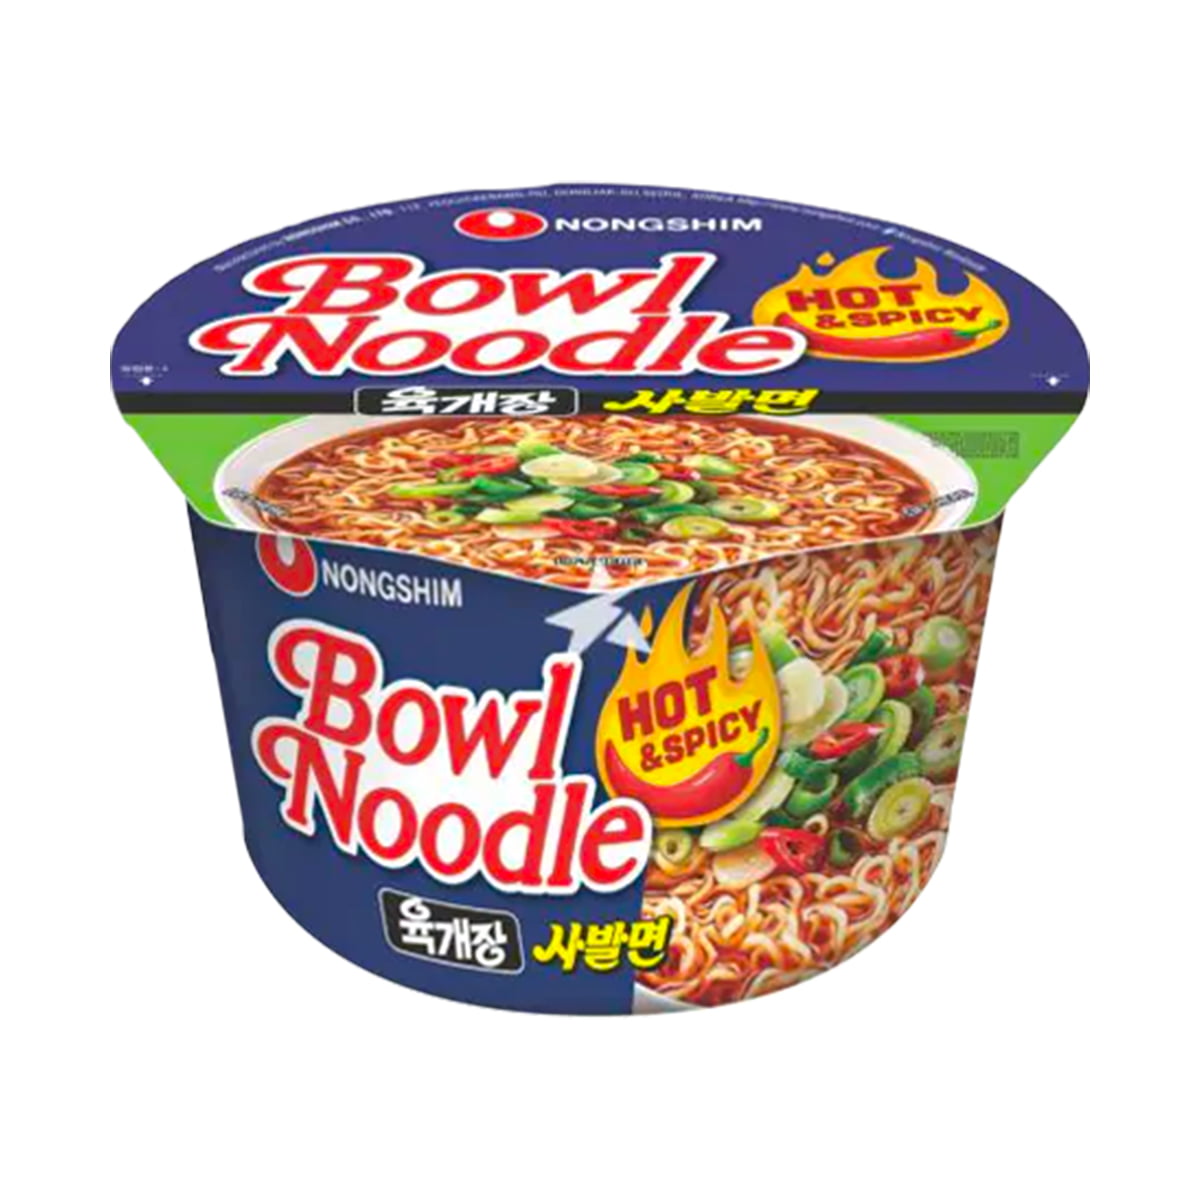 Lamen Coreano Yuguejang Bowl Noodle Soup Nongshim Hot & Spicy - 100g